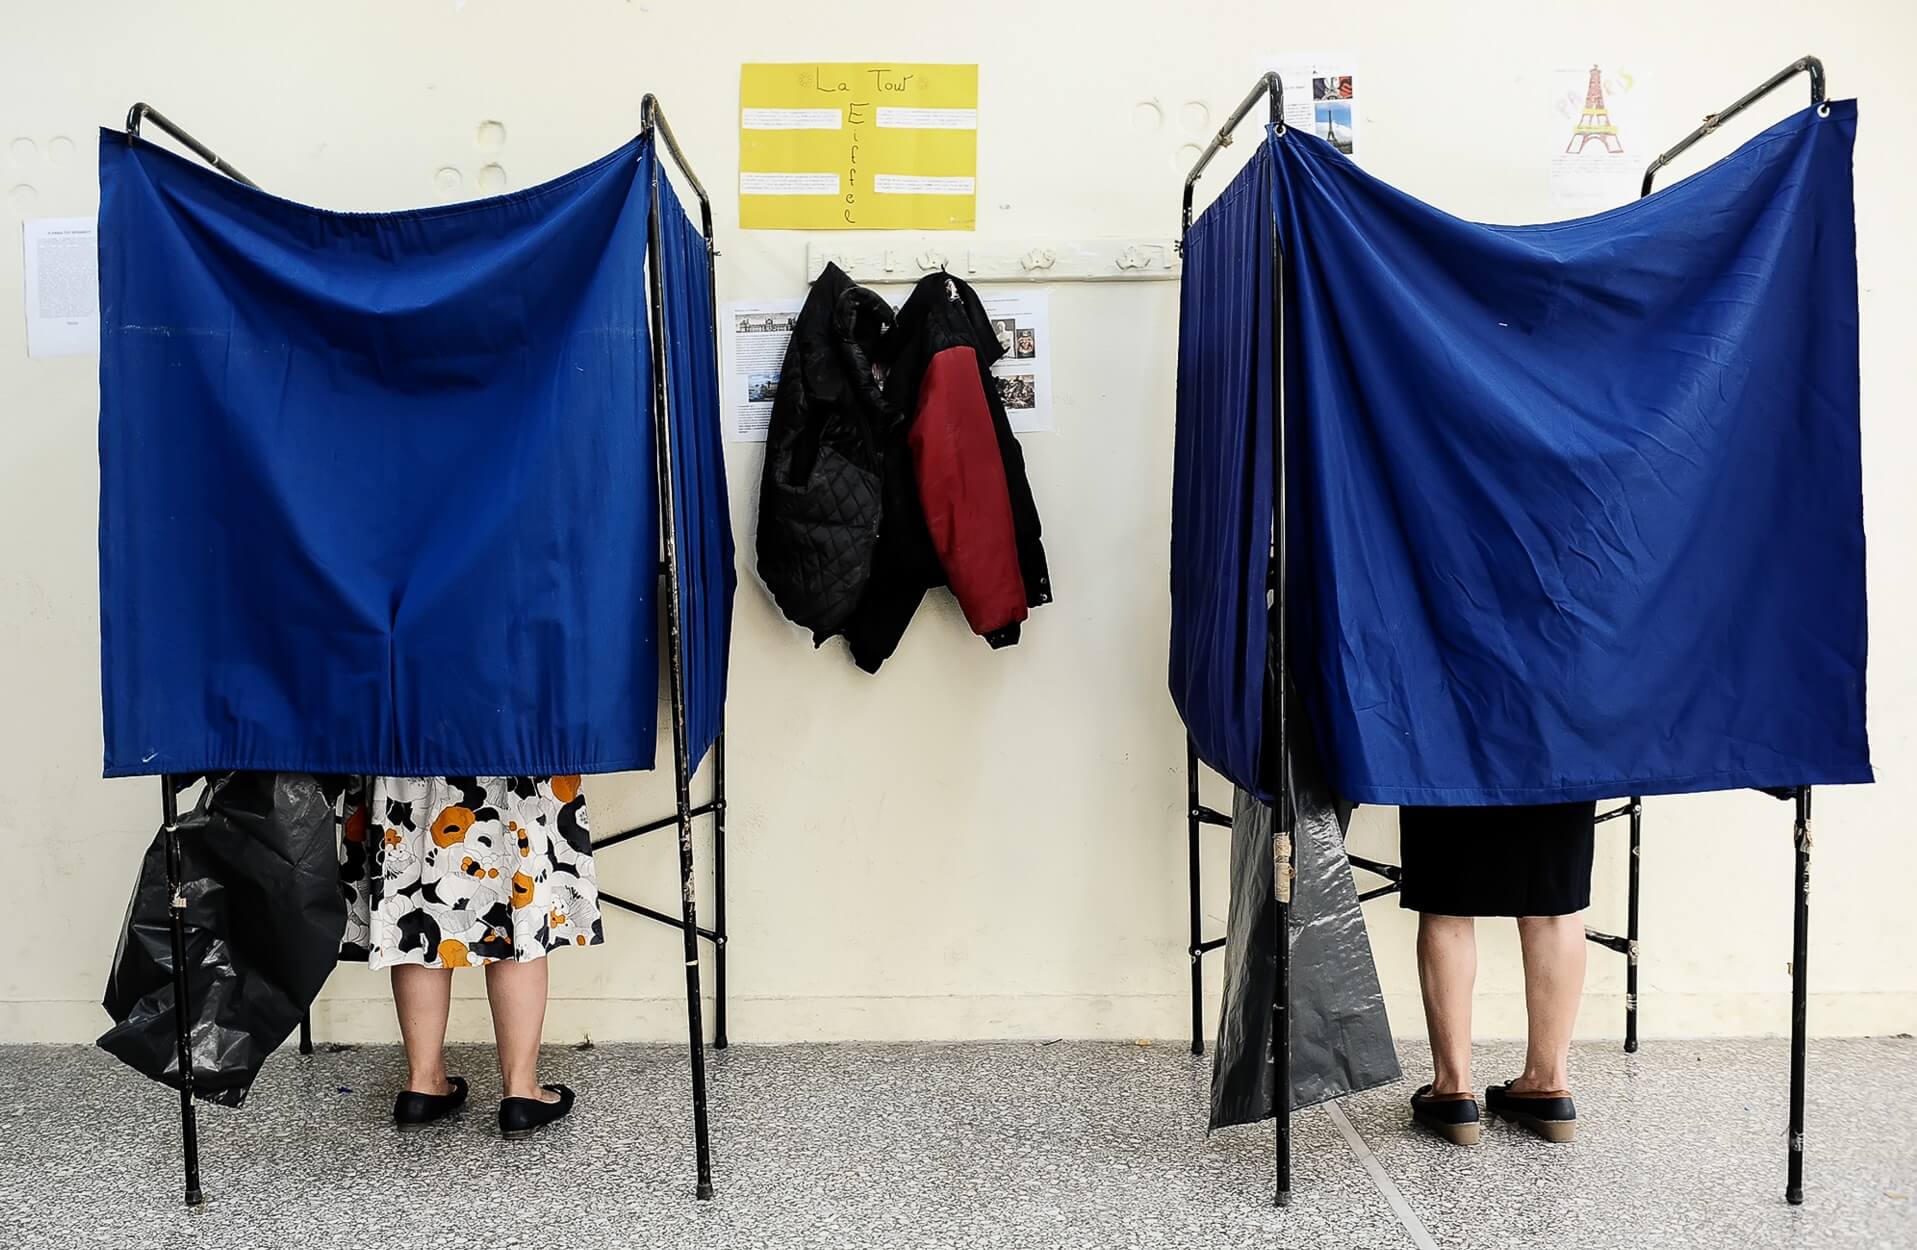 ΥΠΕΣ – Μάθε που ψηφίζεις 2019: Που ψηφίζω για Ευρωεκλογές, δημοτικές, περιφερειακές